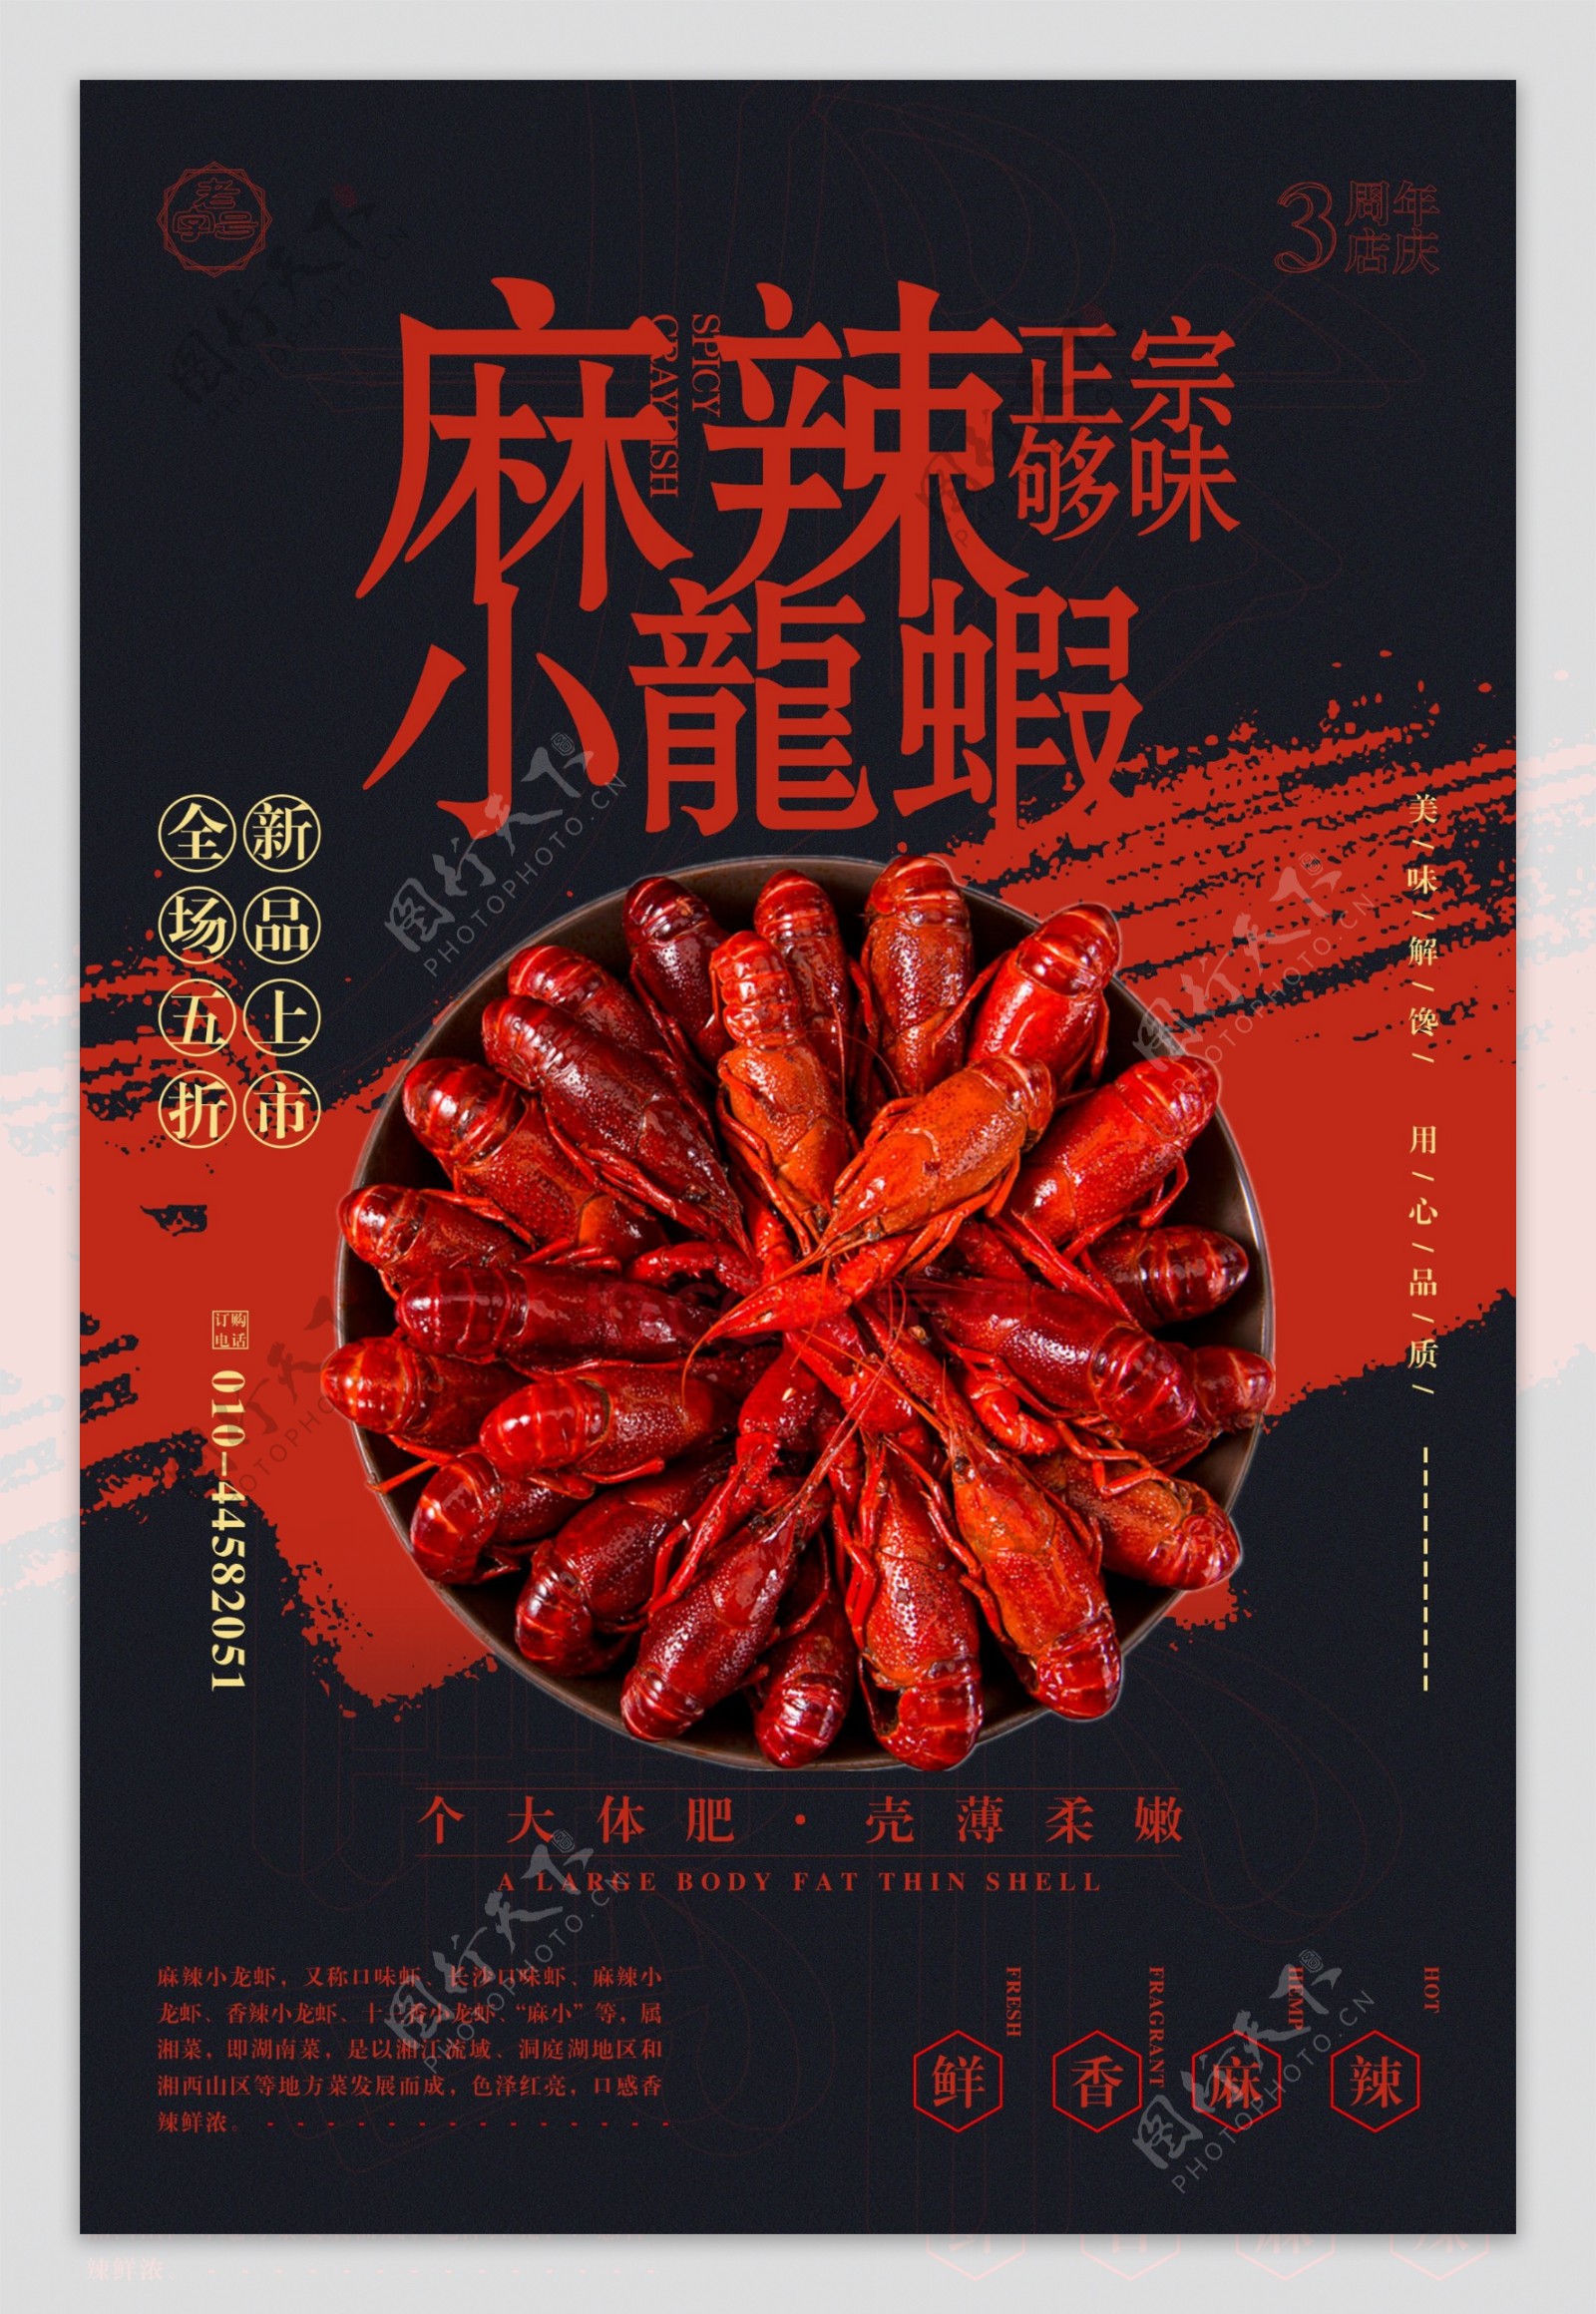 酷炫黑色小龙虾餐饮美食宣传海报设计模板